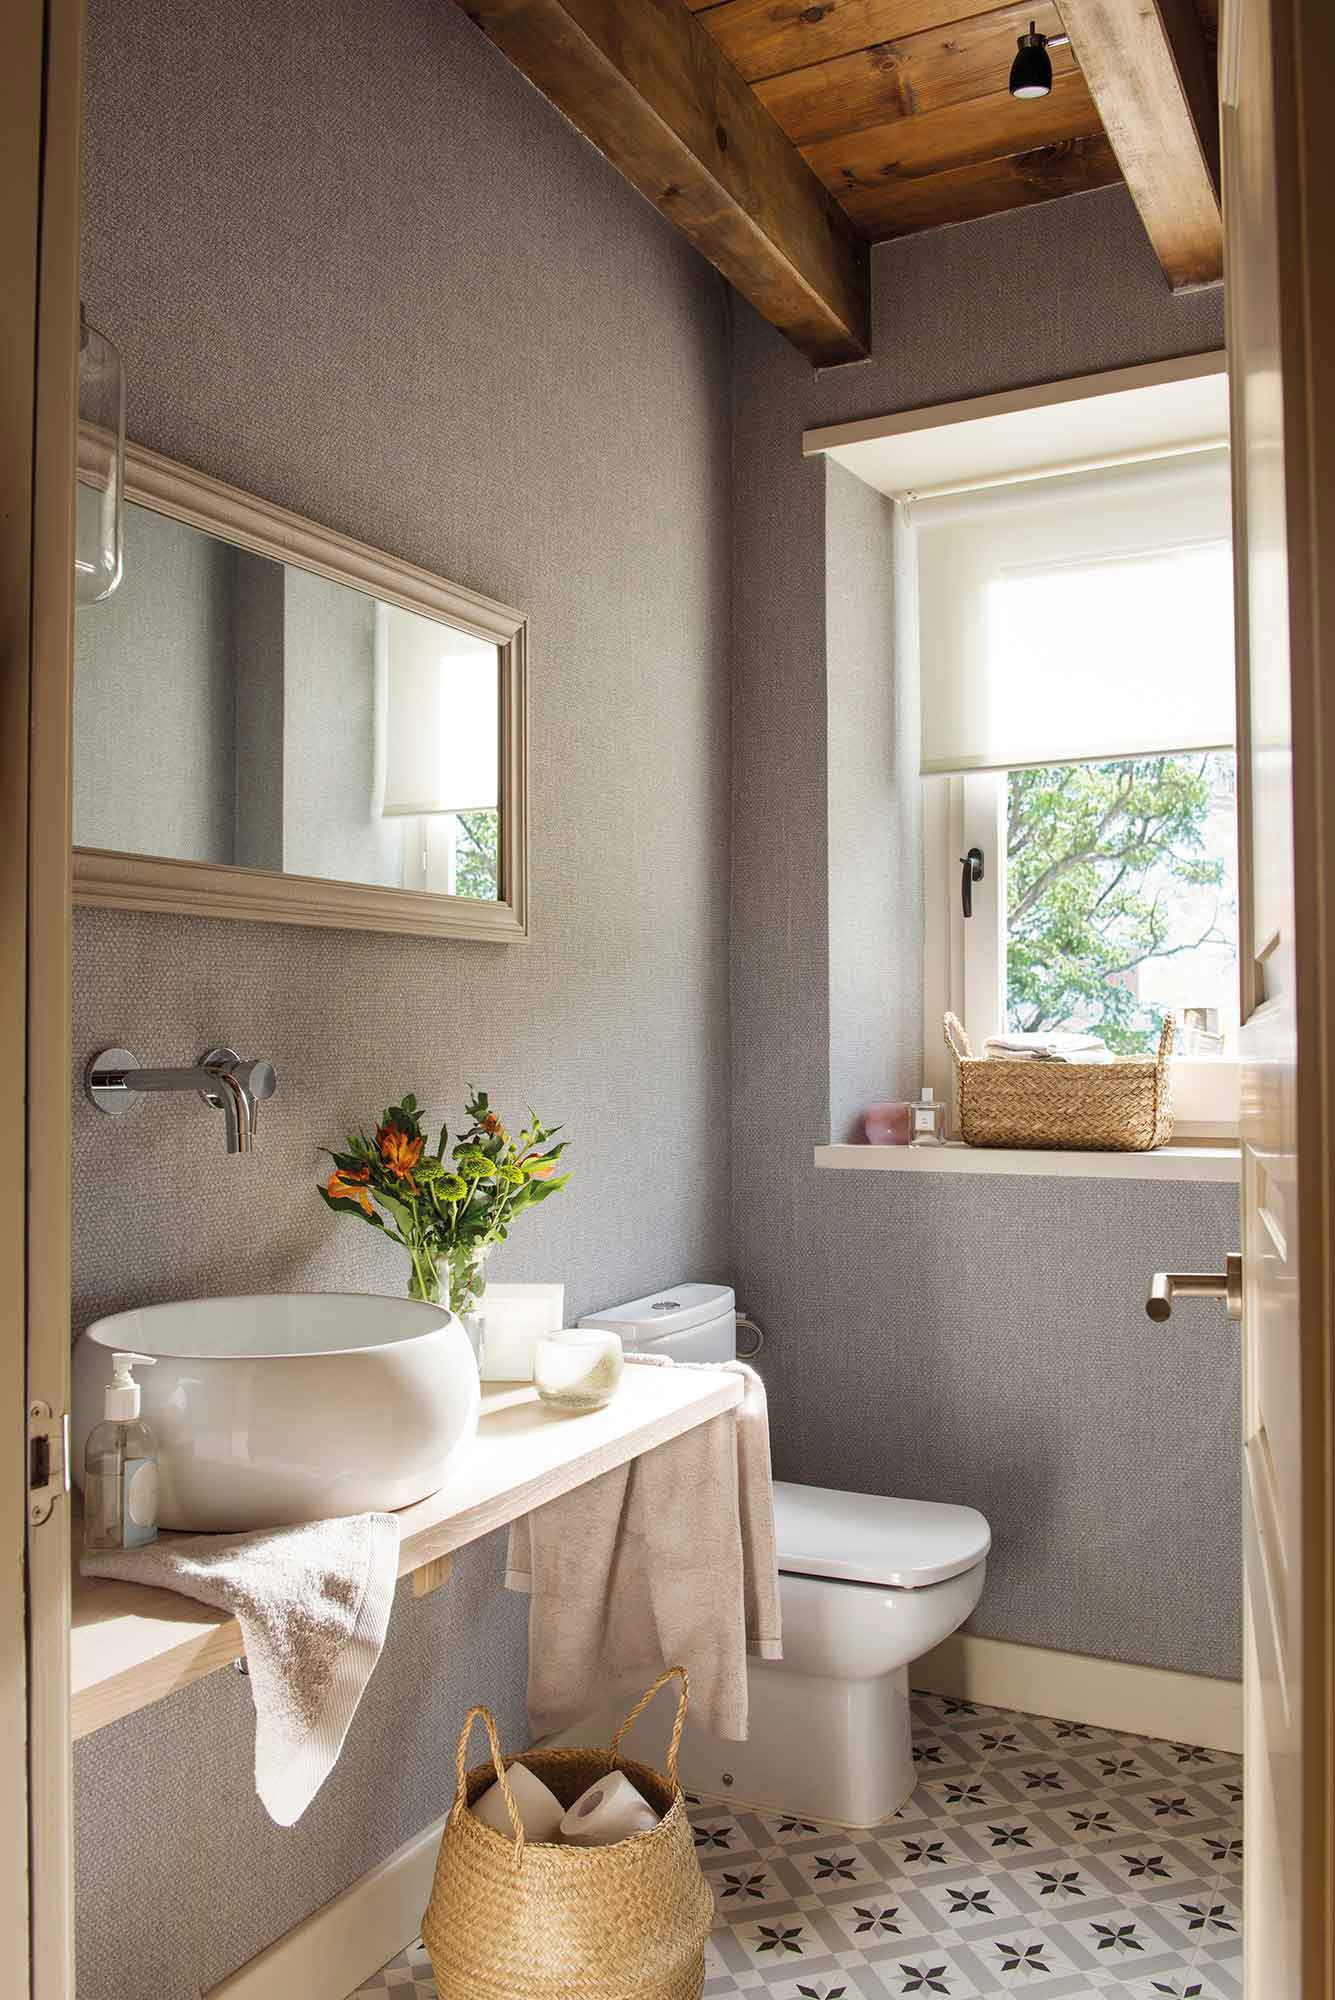 Baño con frente de papel pintado tejido en color gris y balda de madera como mueble de lavabo.